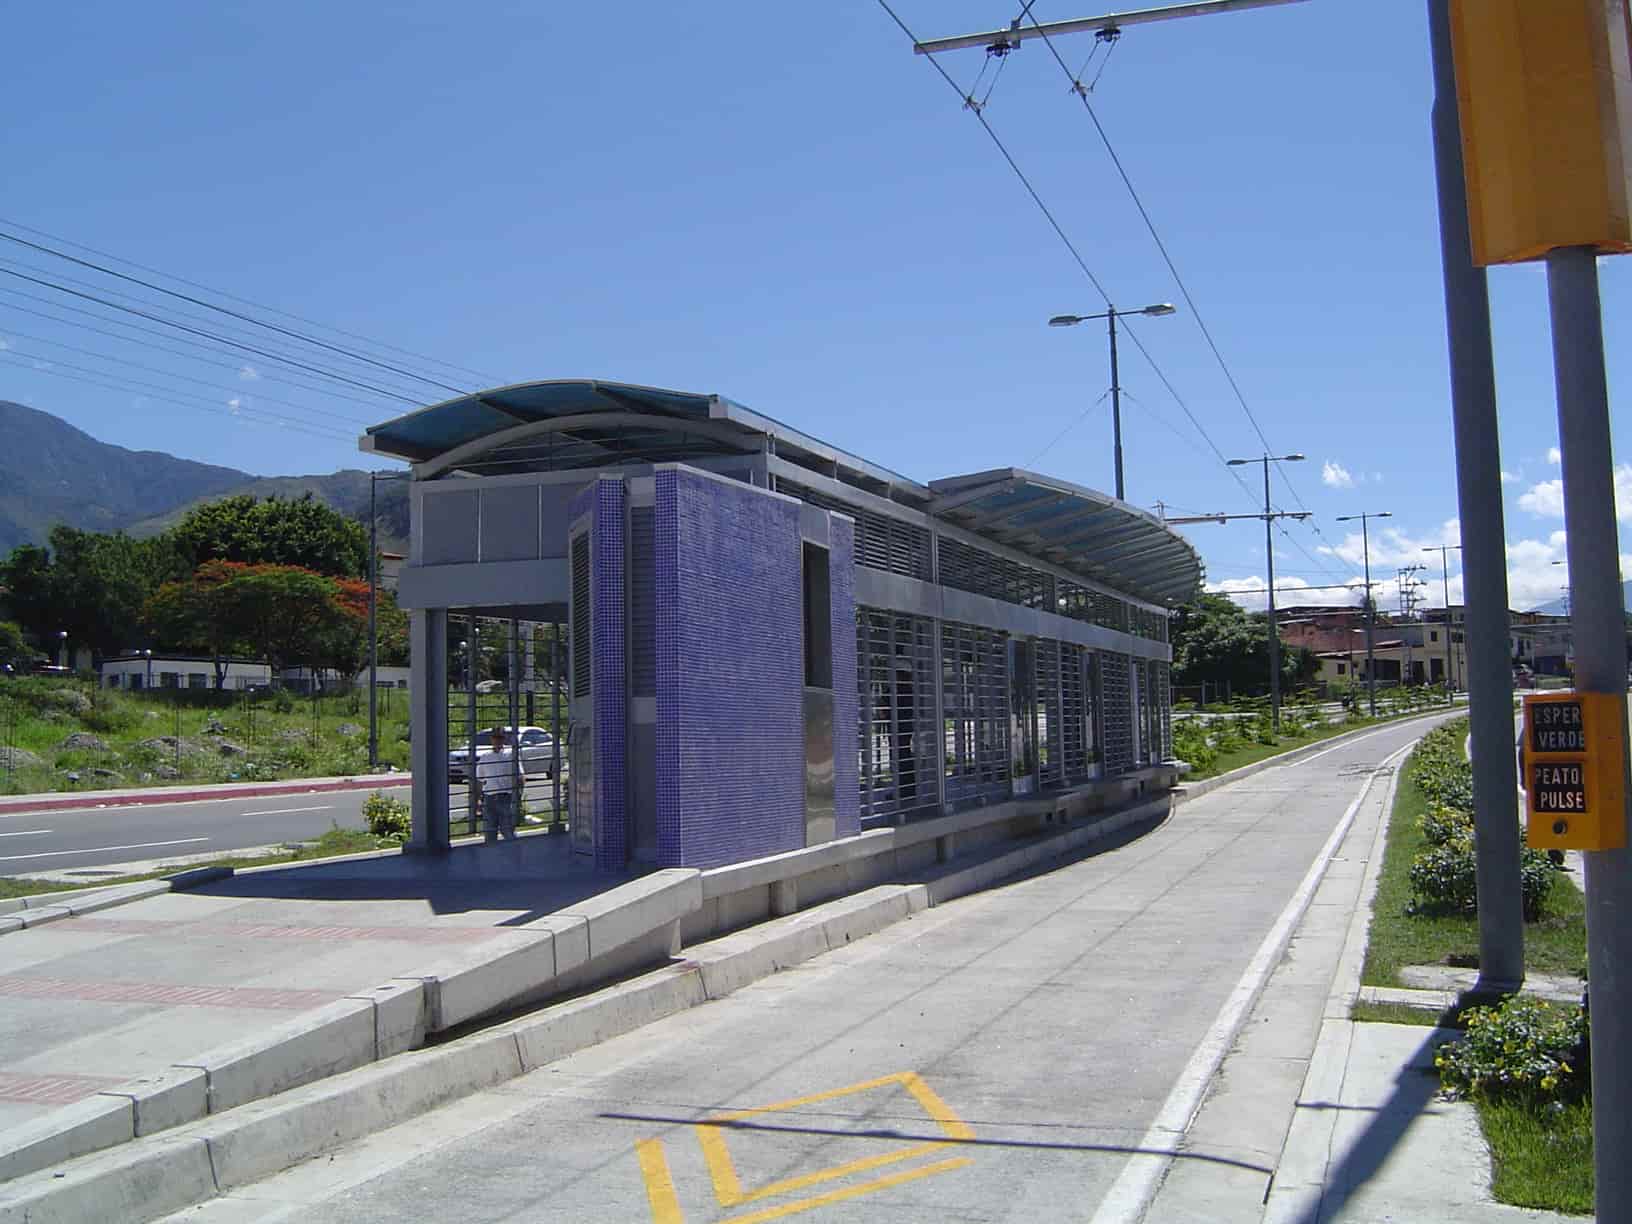 BRT merida venezuela troleBus Bus rapid transit